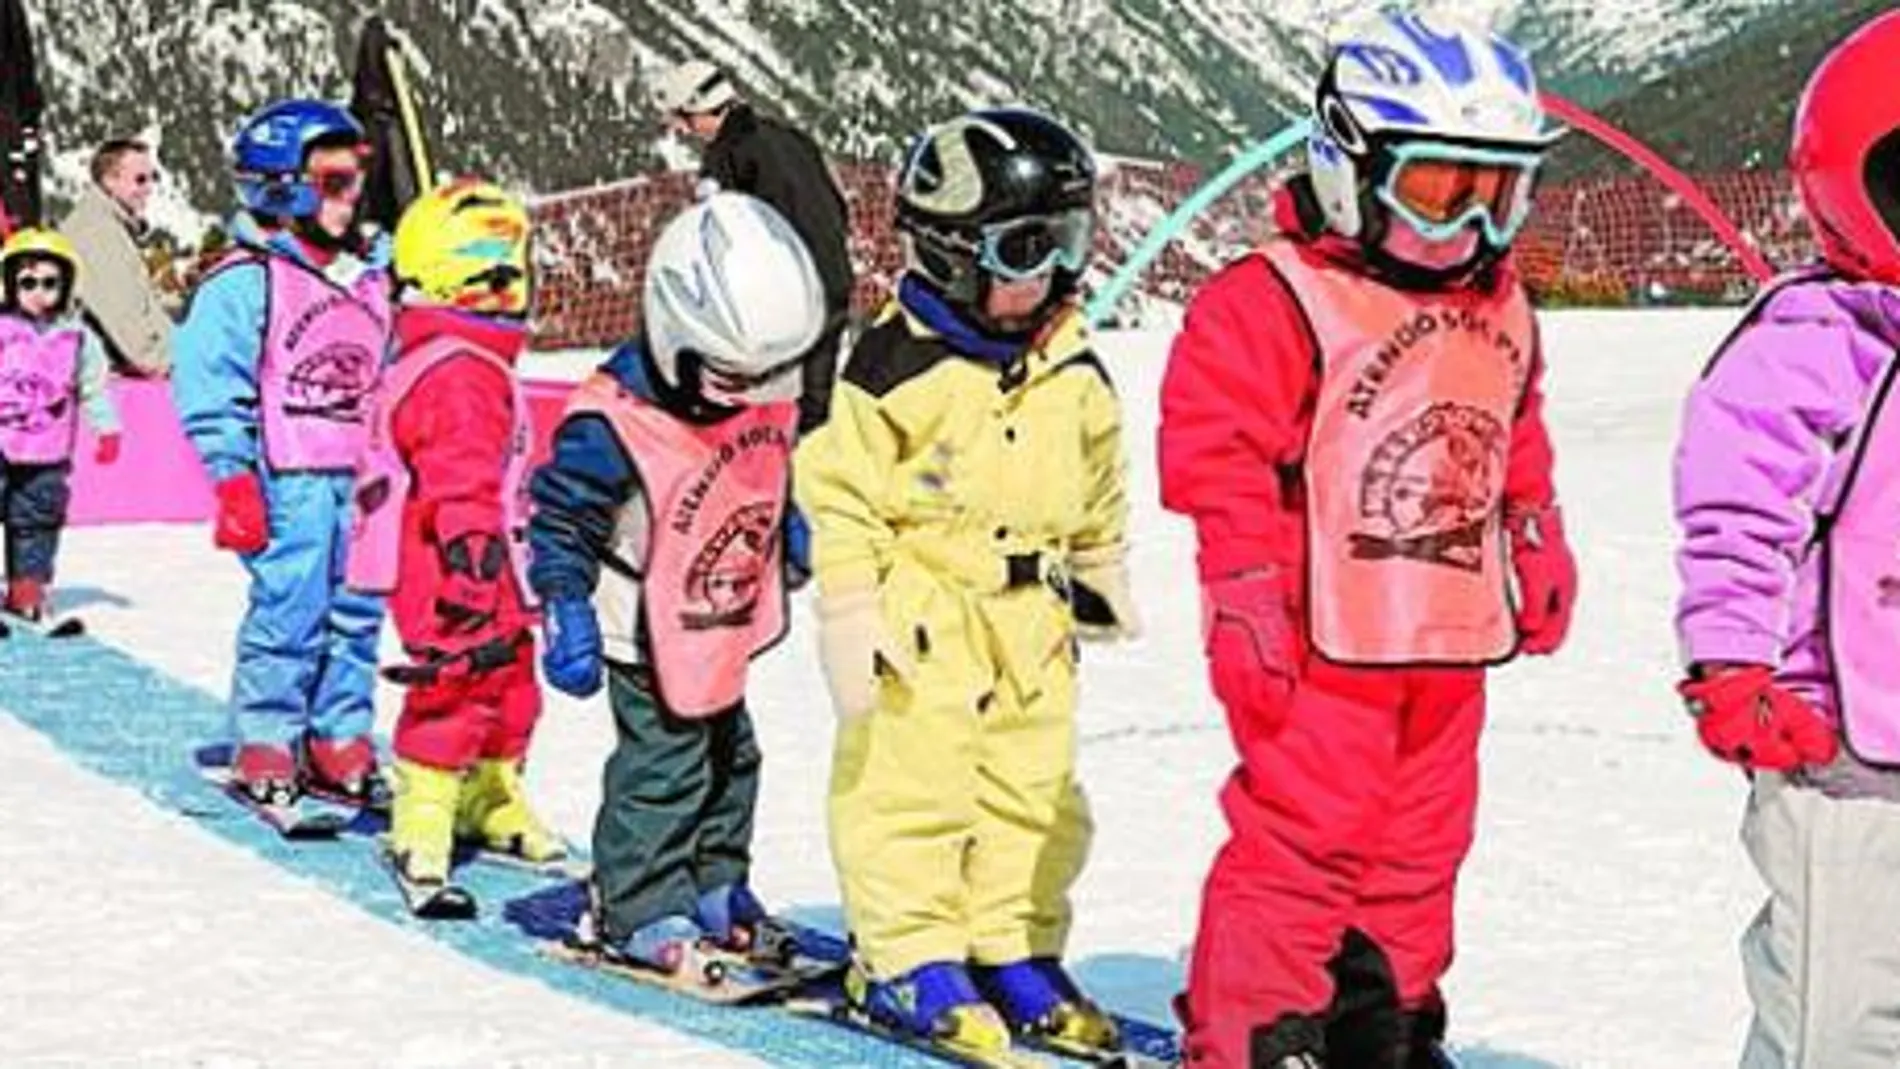 Andorra: Nieve para toda la familia